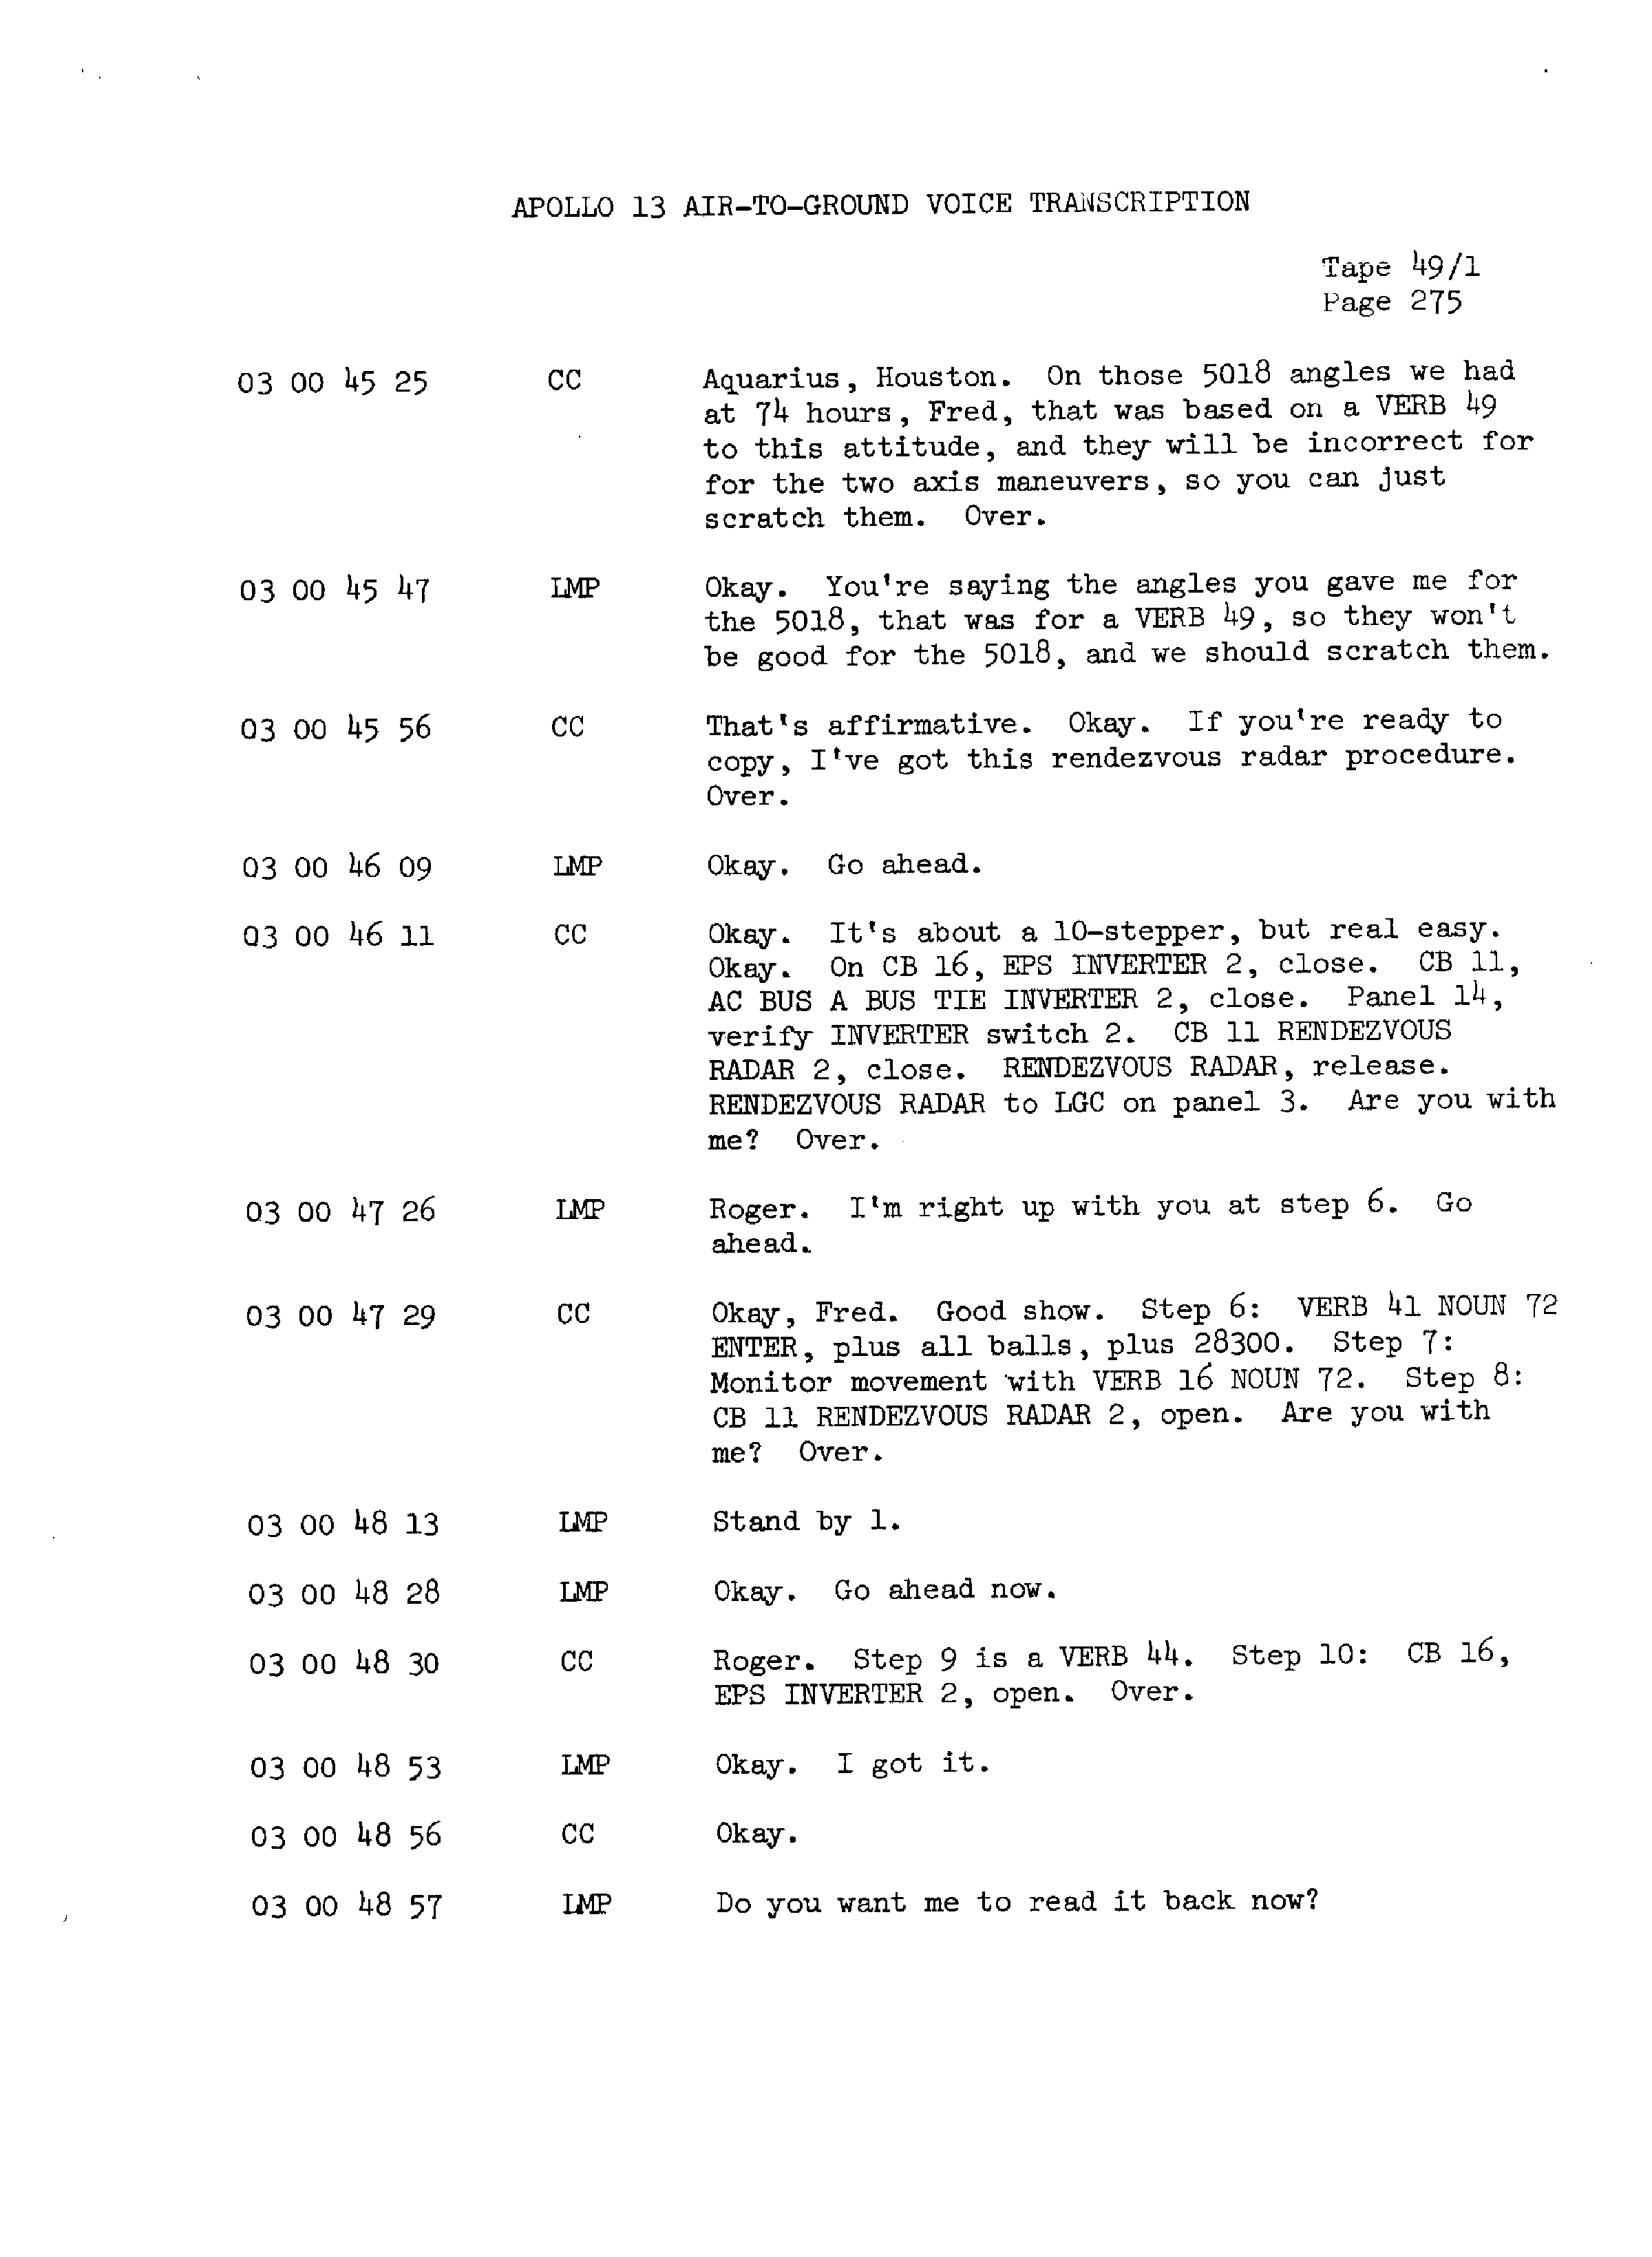 Page 282 of Apollo 13’s original transcript